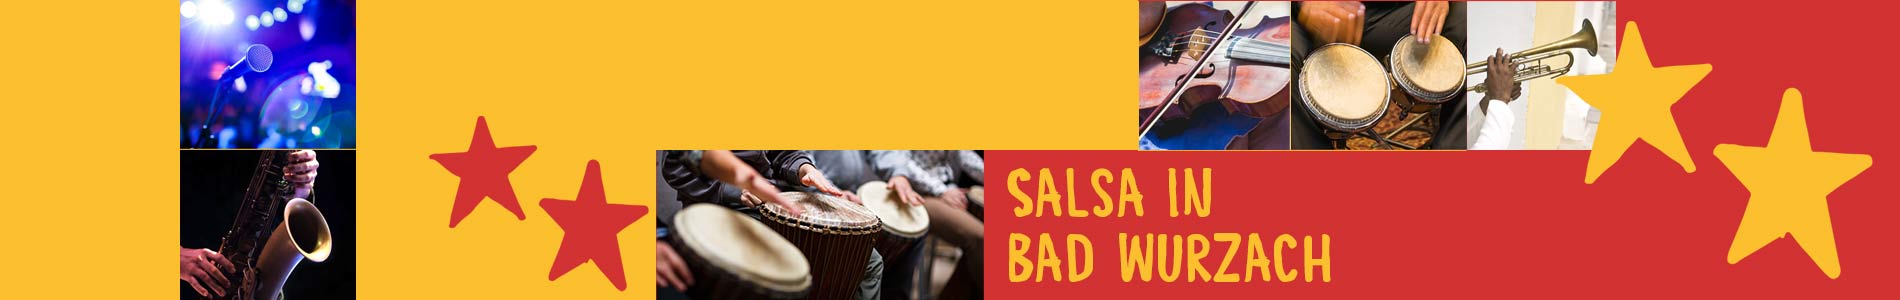 Salsa in Bad Wurzach – Salsa lernen und tanzen, Tanzkurse, Partys, Veranstaltungen